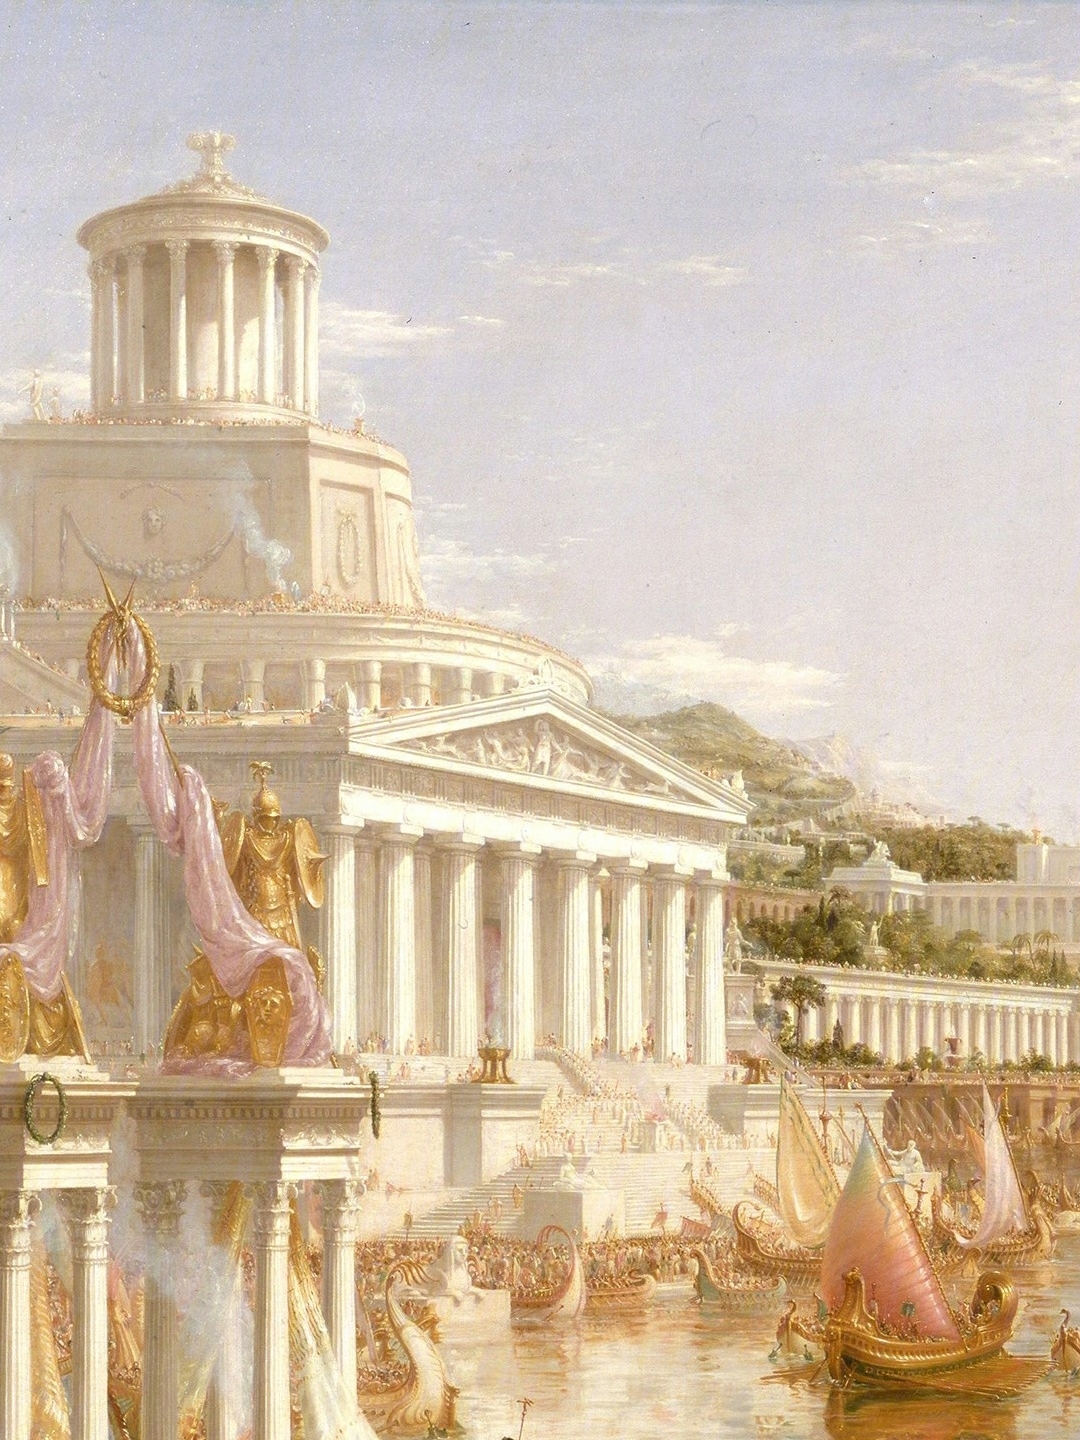 托马斯科尔经典古希腊建筑风油画细节大赏